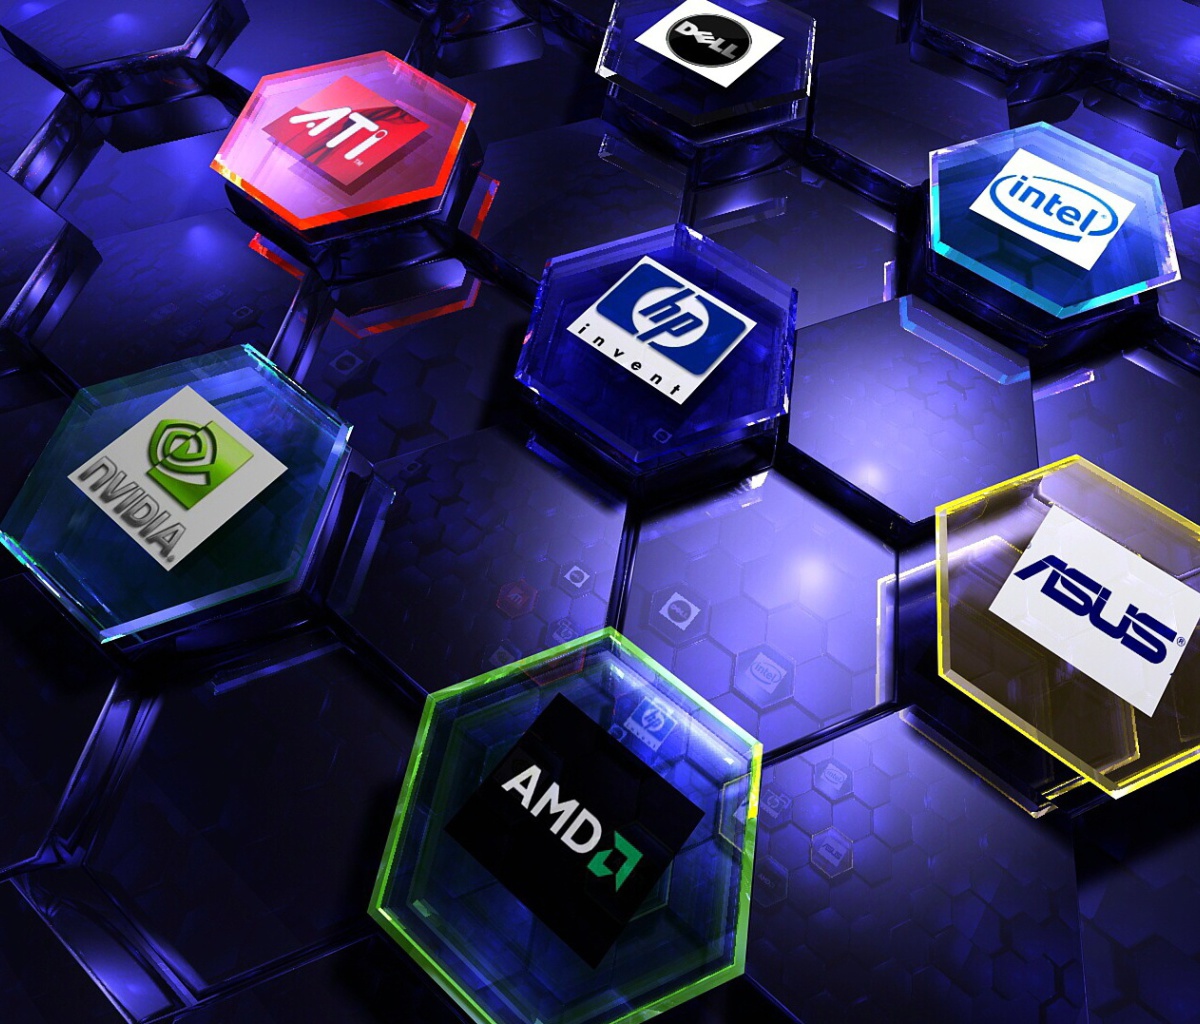 Das Hi-Tech Logos: AMD, HP, Ati, Nvidia, Asus Wallpaper 1200x1024